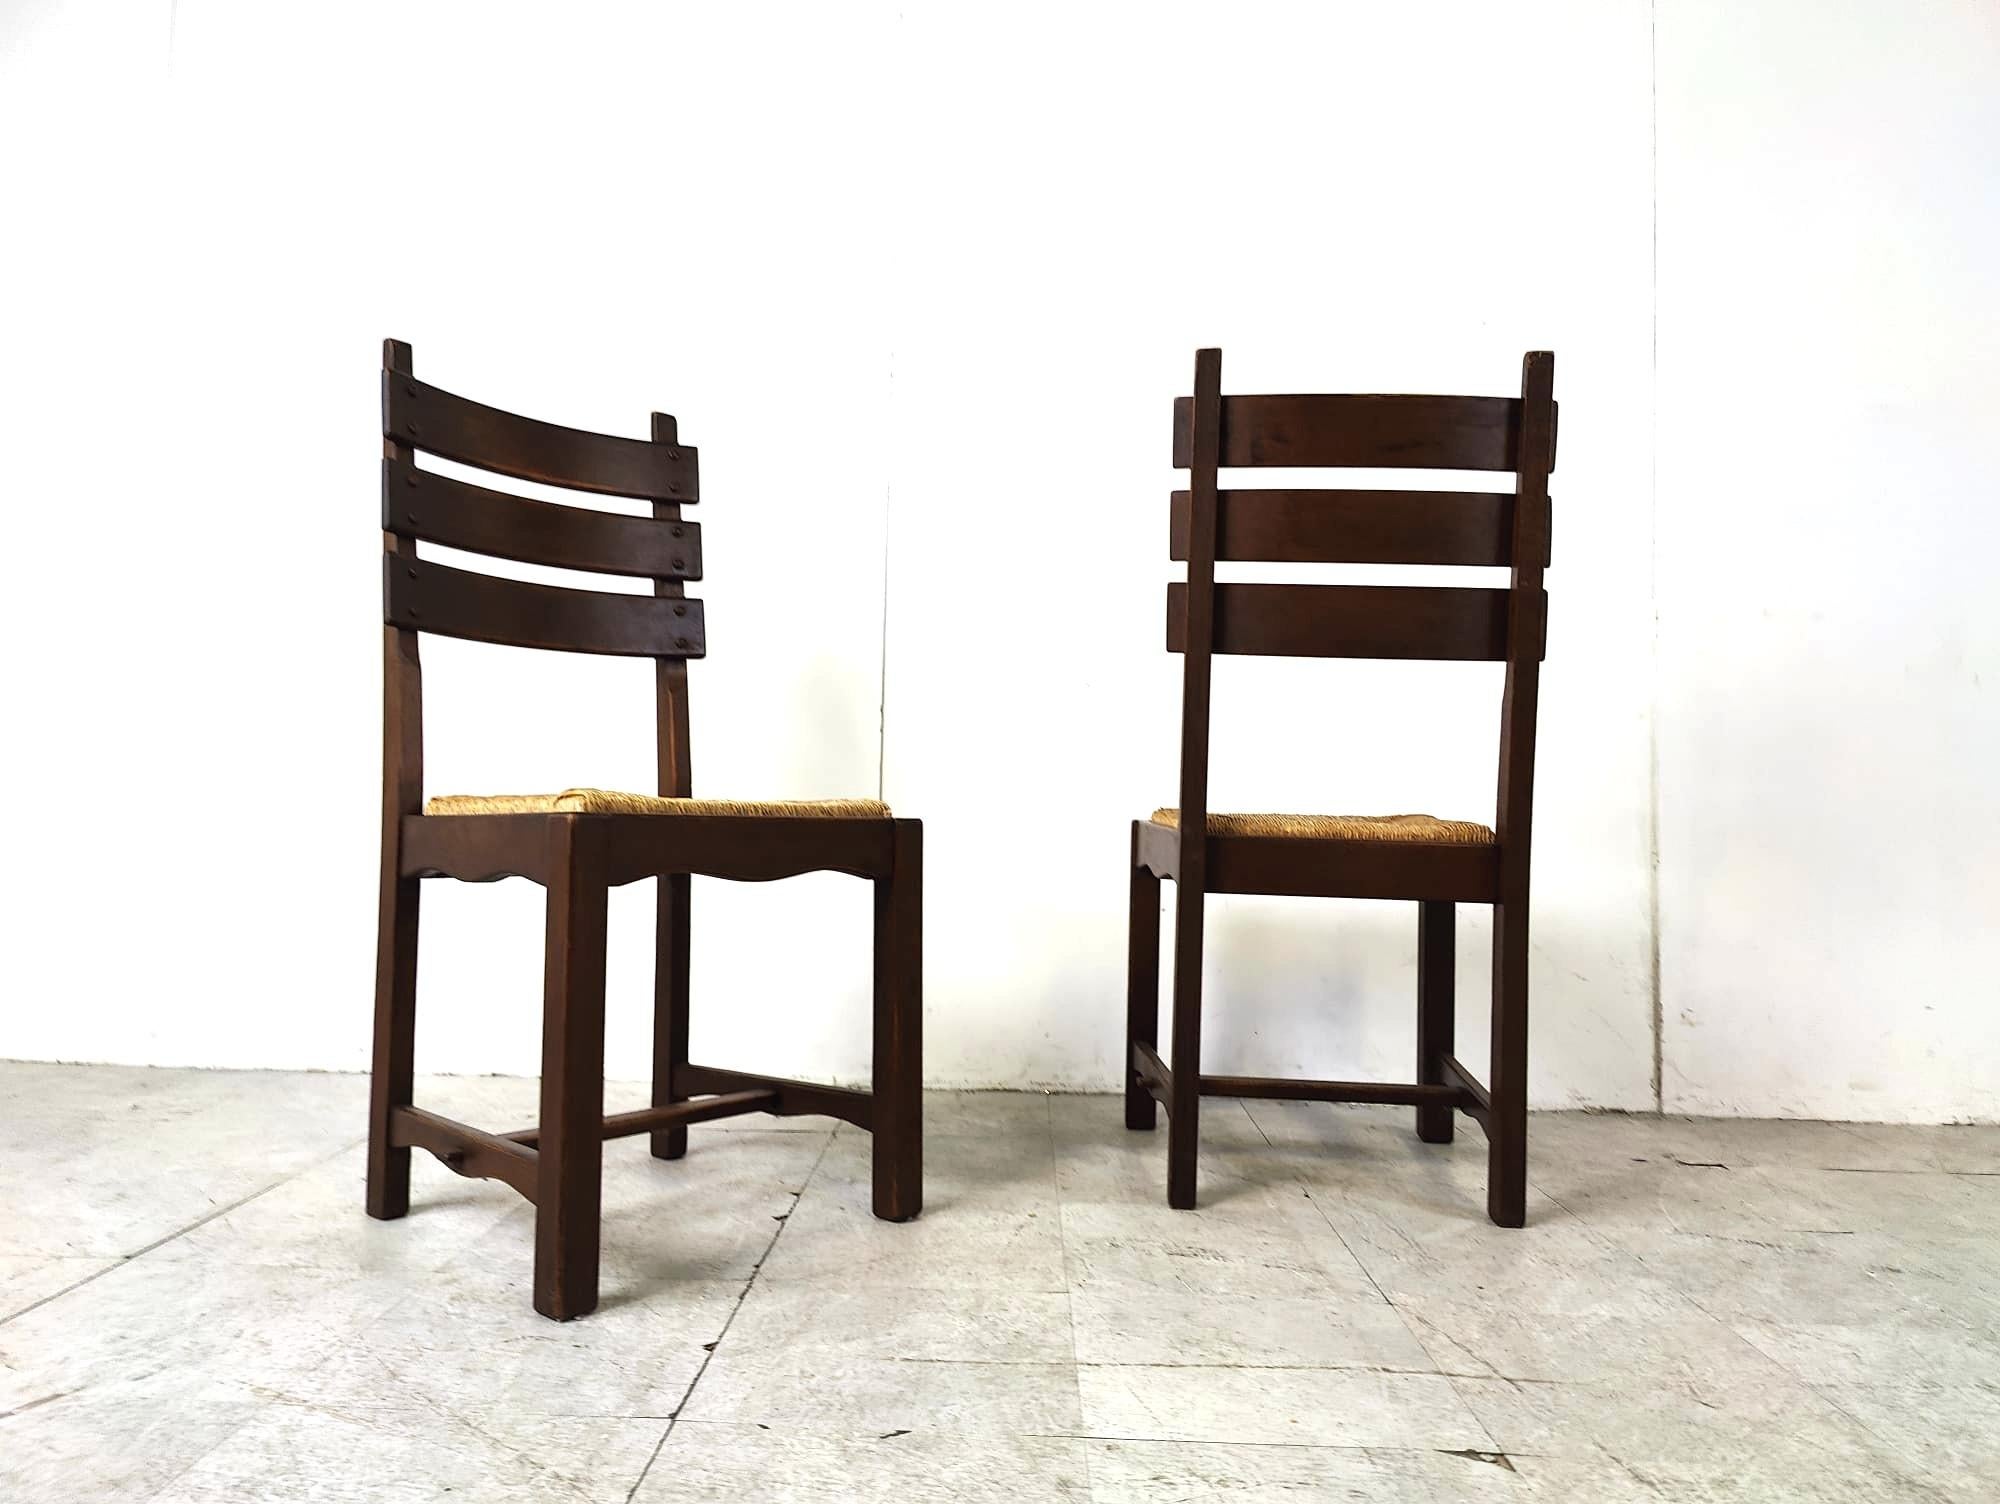 Chaises de salle à manger vintage en chêne robuste et osier de style brutaliste.

Châssis en chêne robuste et durable avec des sièges en osier épais.

Les dossiers hauts sont un élément clé du design de ces chaises.

Années 1960 - Belgique

Bon état